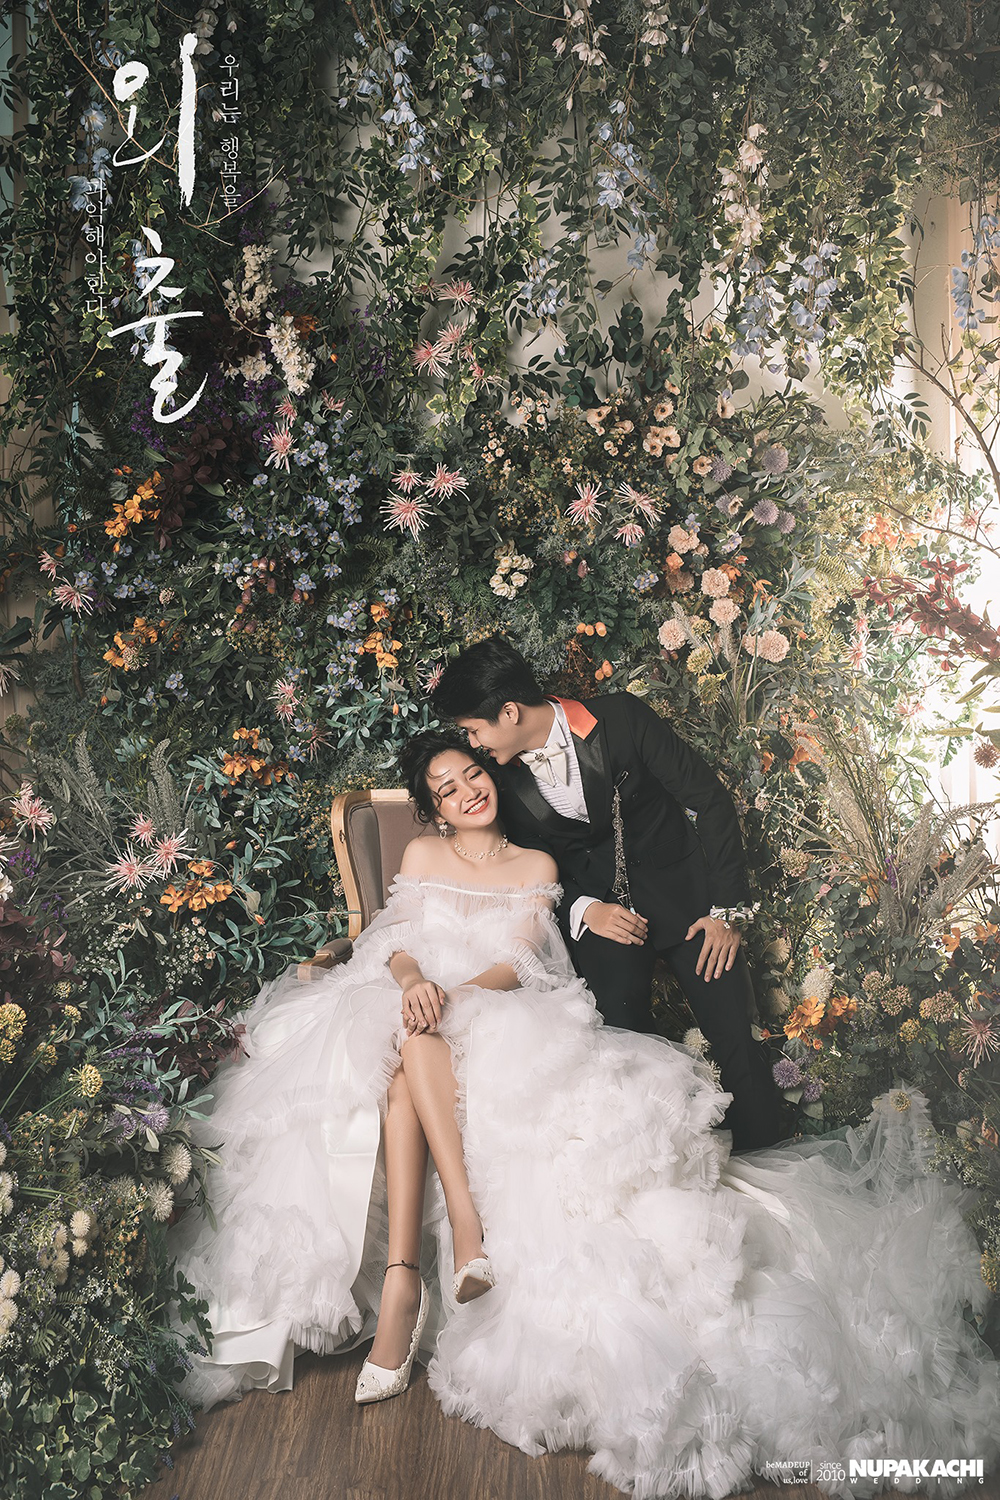 Kinh nghiệm chọn váy cưới khi chụp ảnh cưới - Thoong Studio - Chụp ảnh cưới  chuyên nghiệp